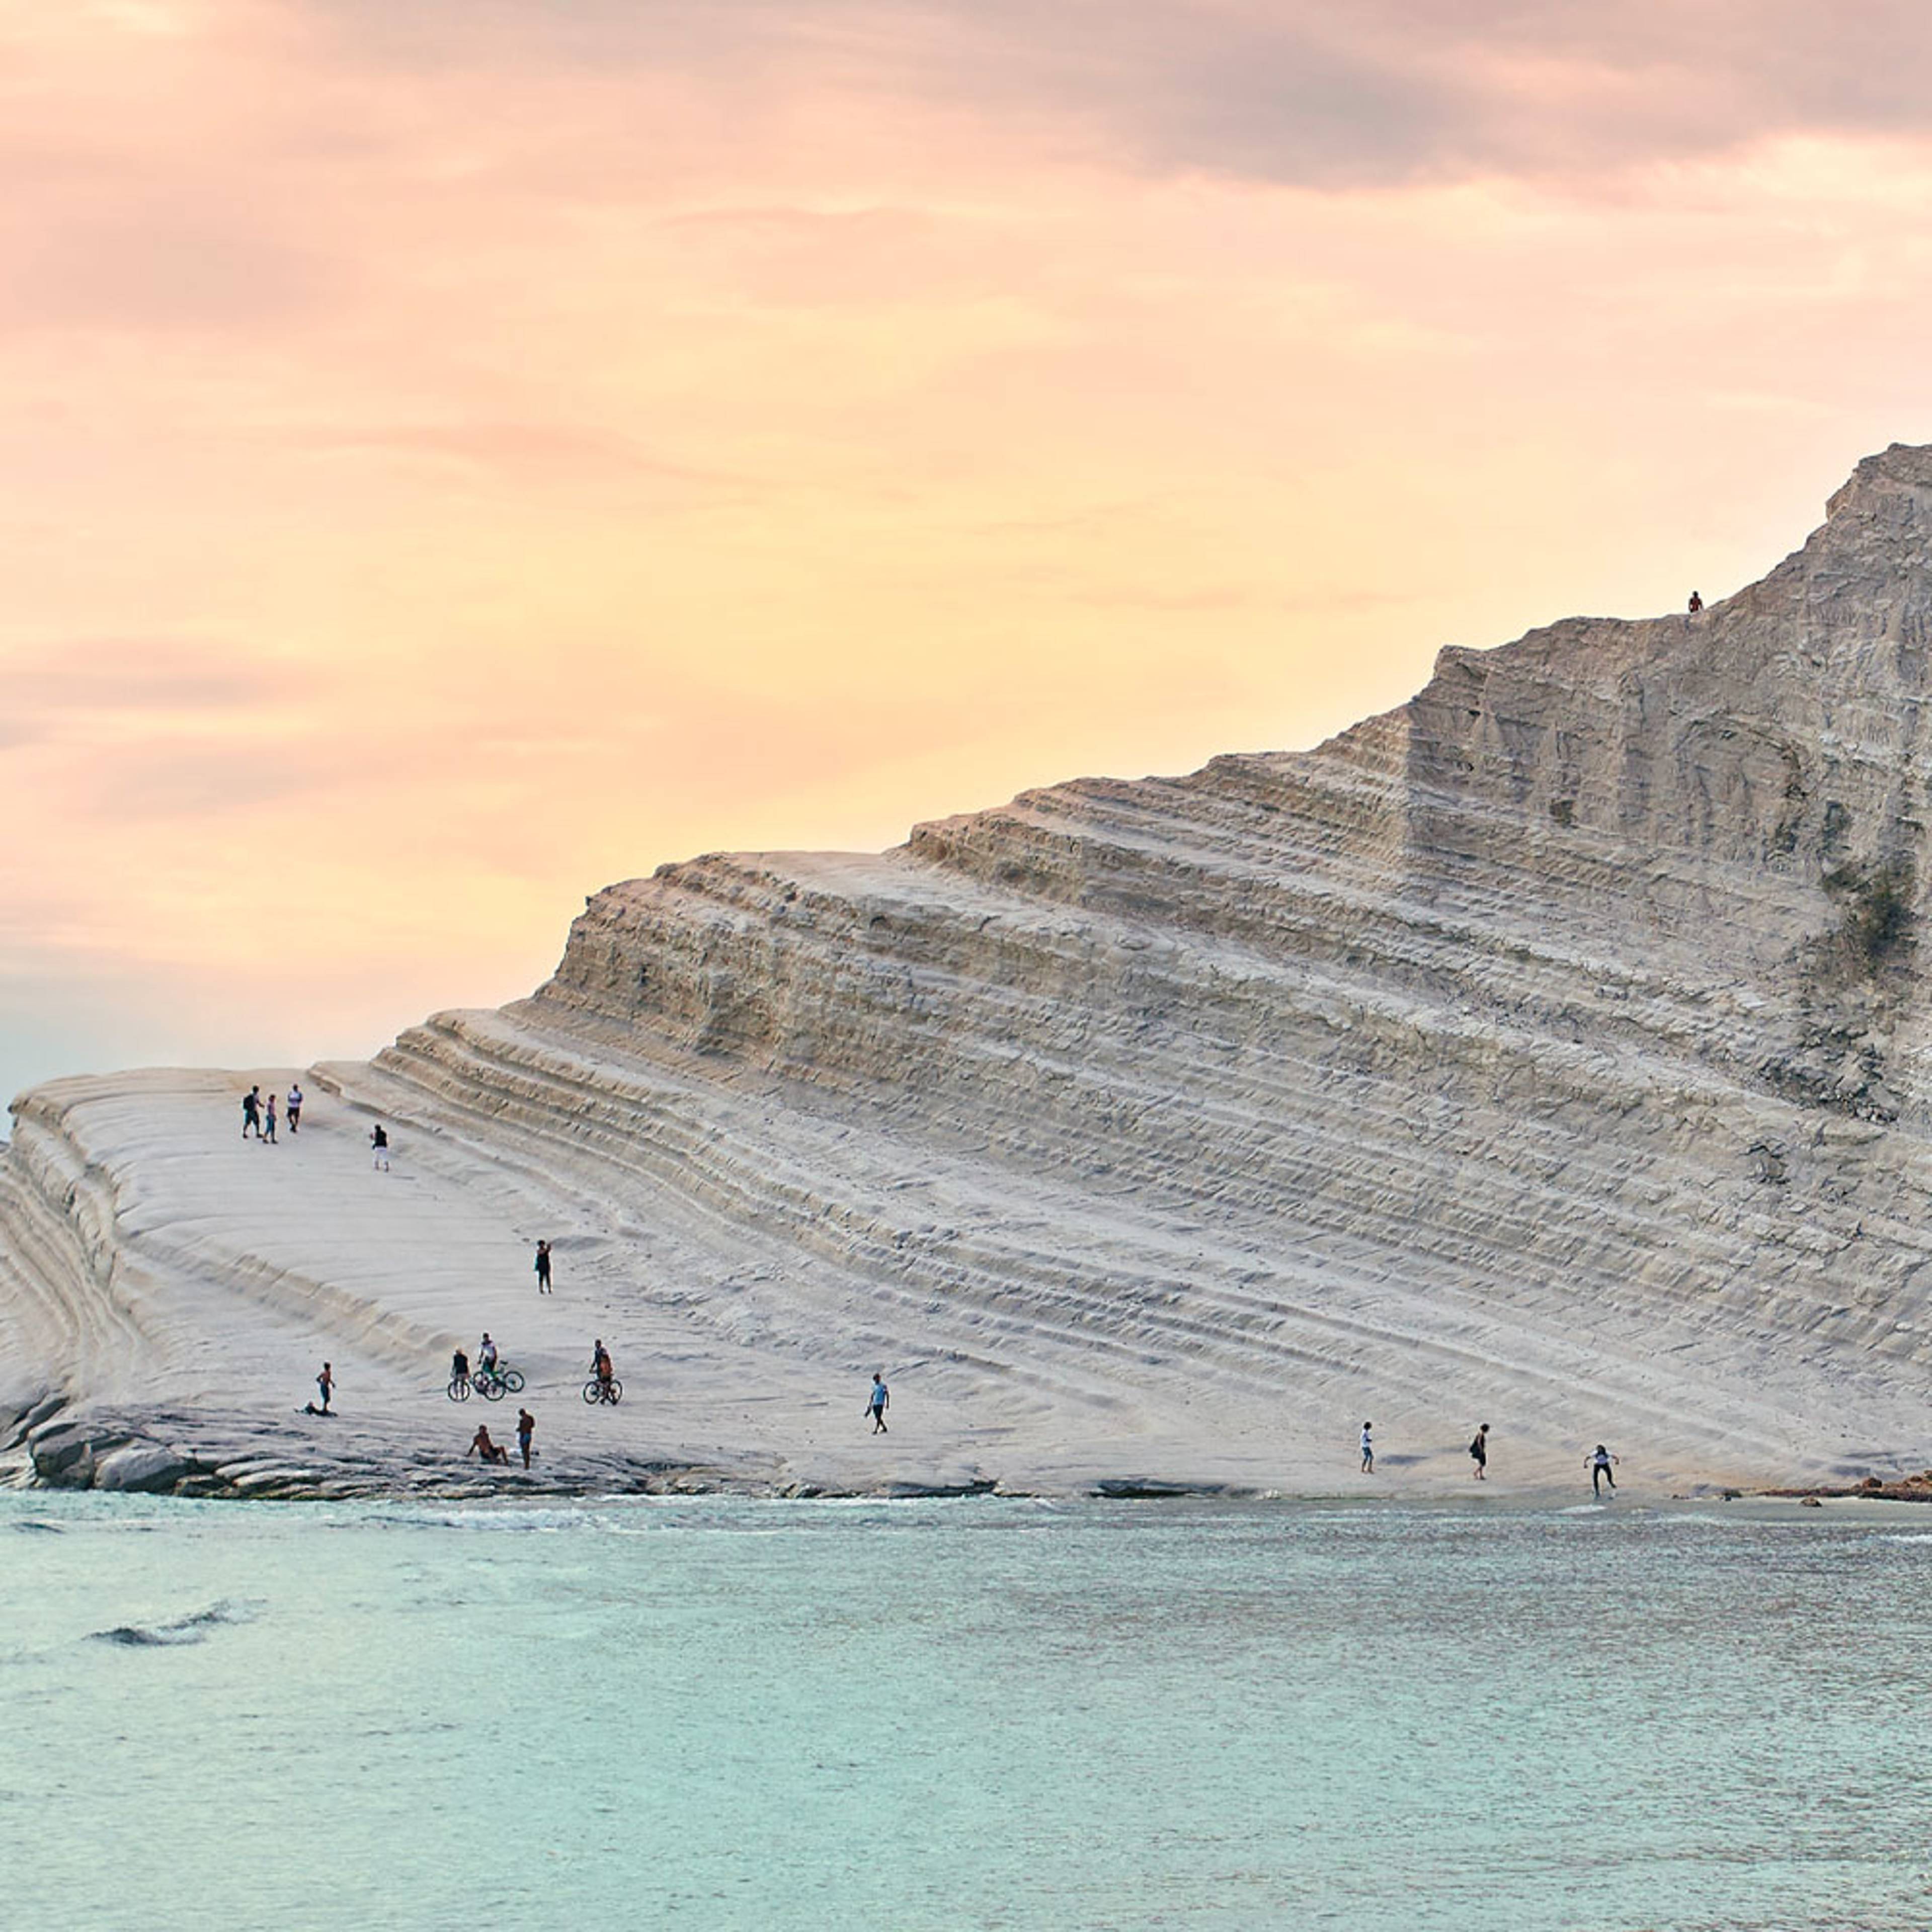 Votre voyage à la découverte des plages de Sicile 100% sur mesure